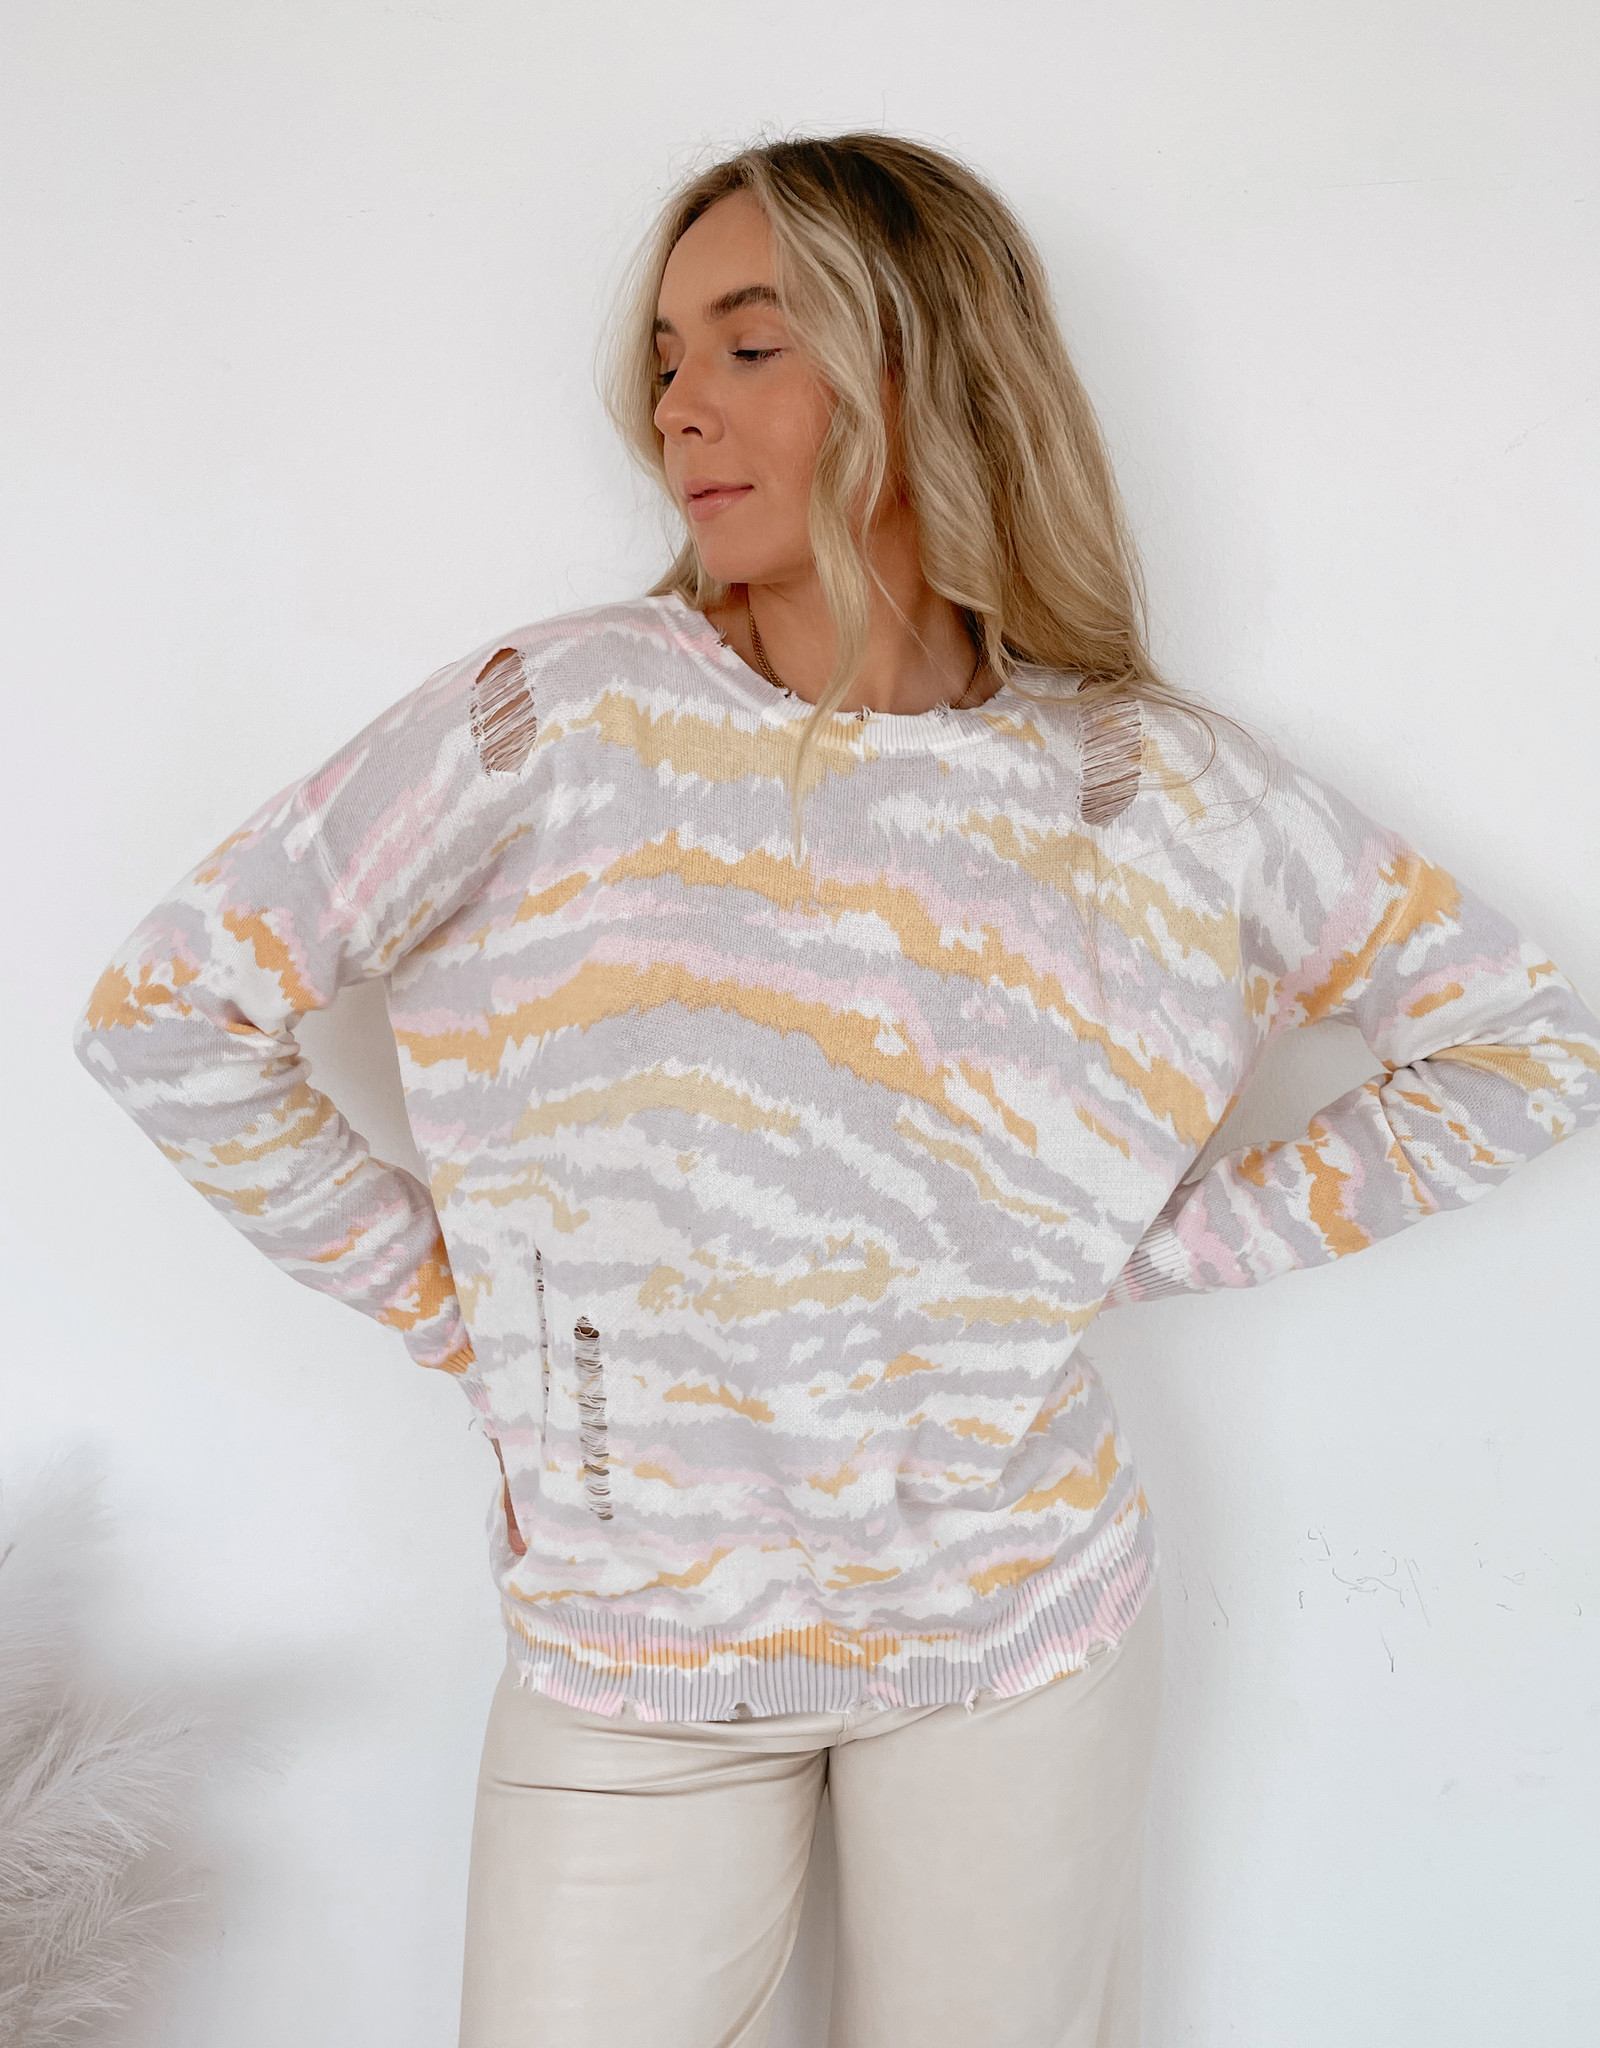 Angelique Animal Print Sweater